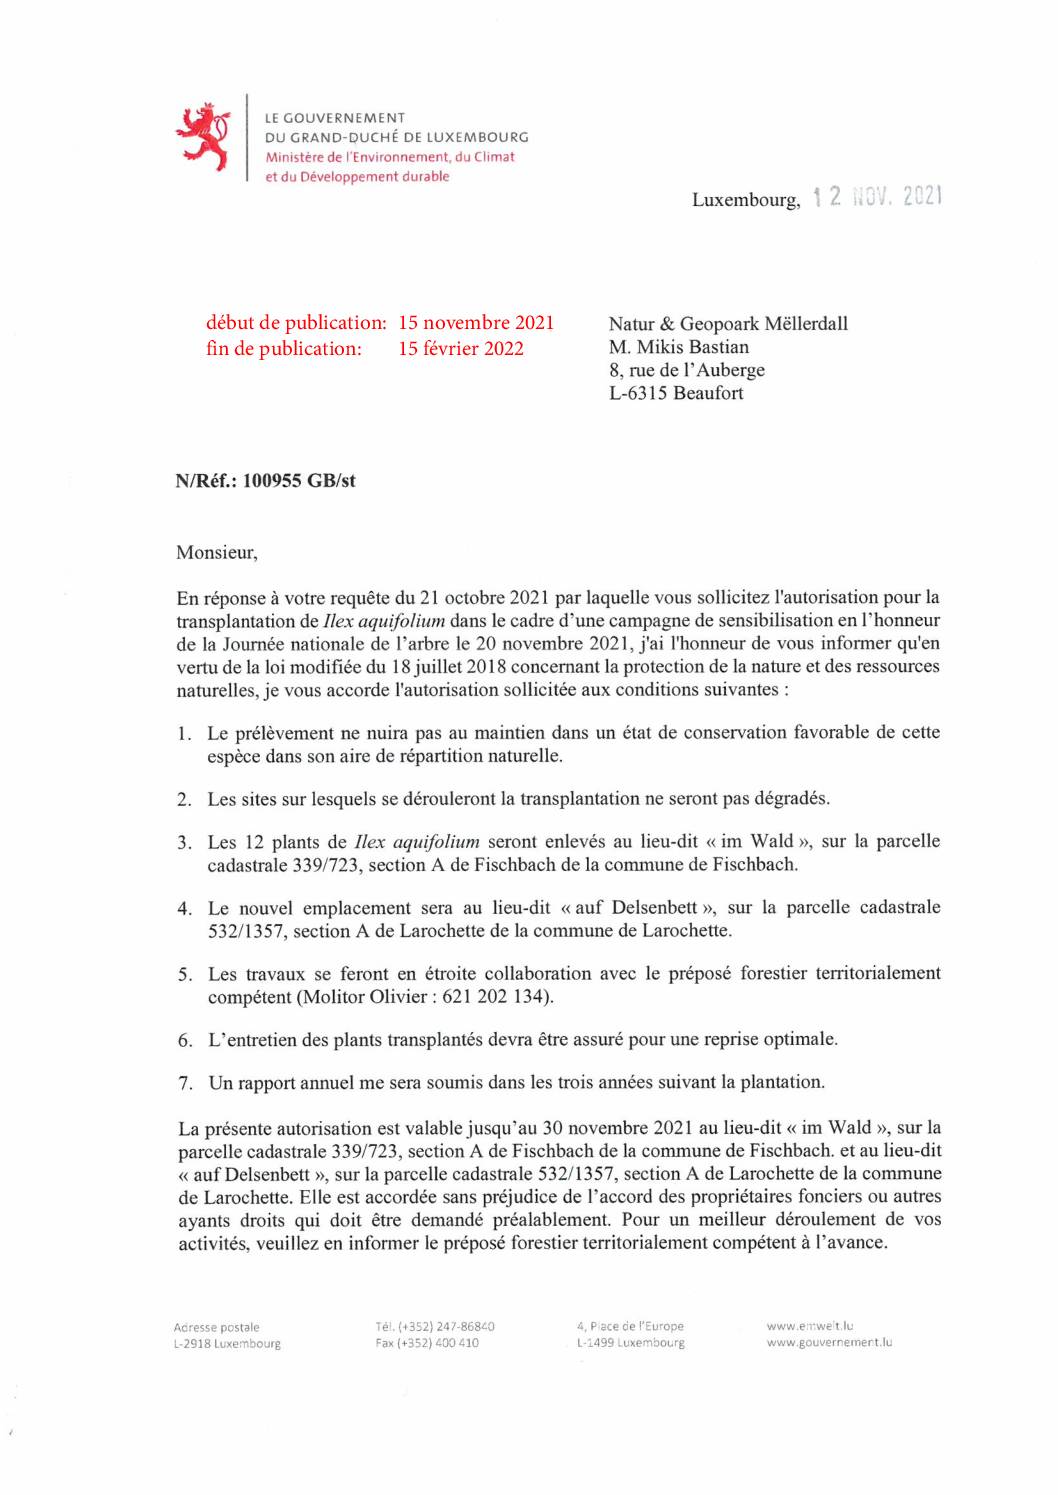 Autorisation pour la transplantation de Ilex aquifolium de Fischbach vers Larochette